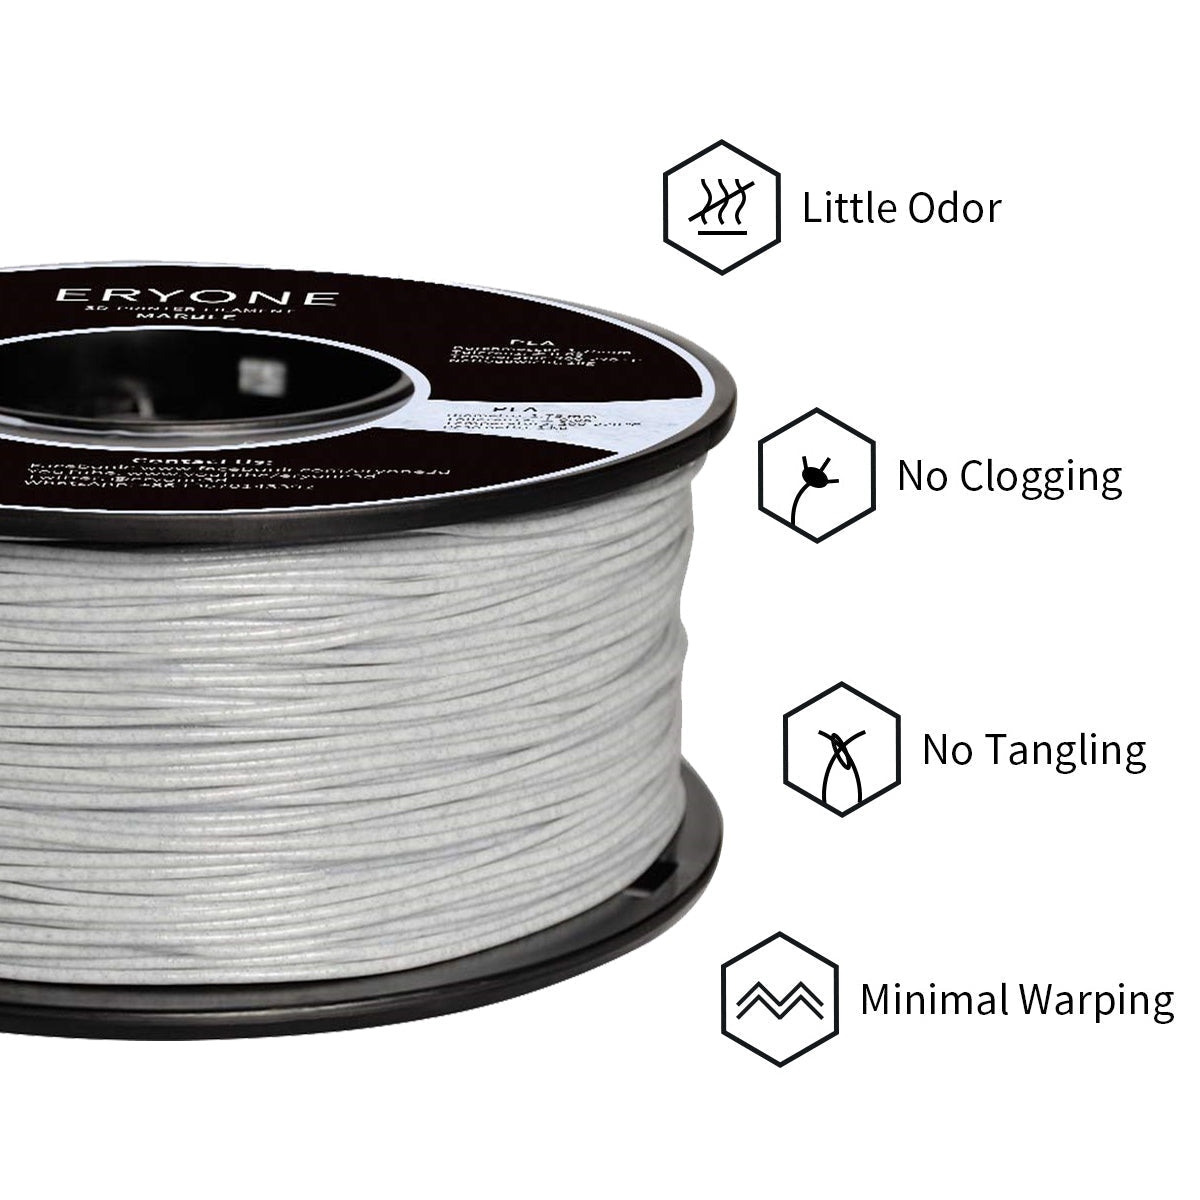 ERYONE Filament PLA Marbre 1.75mm, Filament d'impression 3D PLA pour imprimante/stylet 3D FDM, 1kg 1 bobine